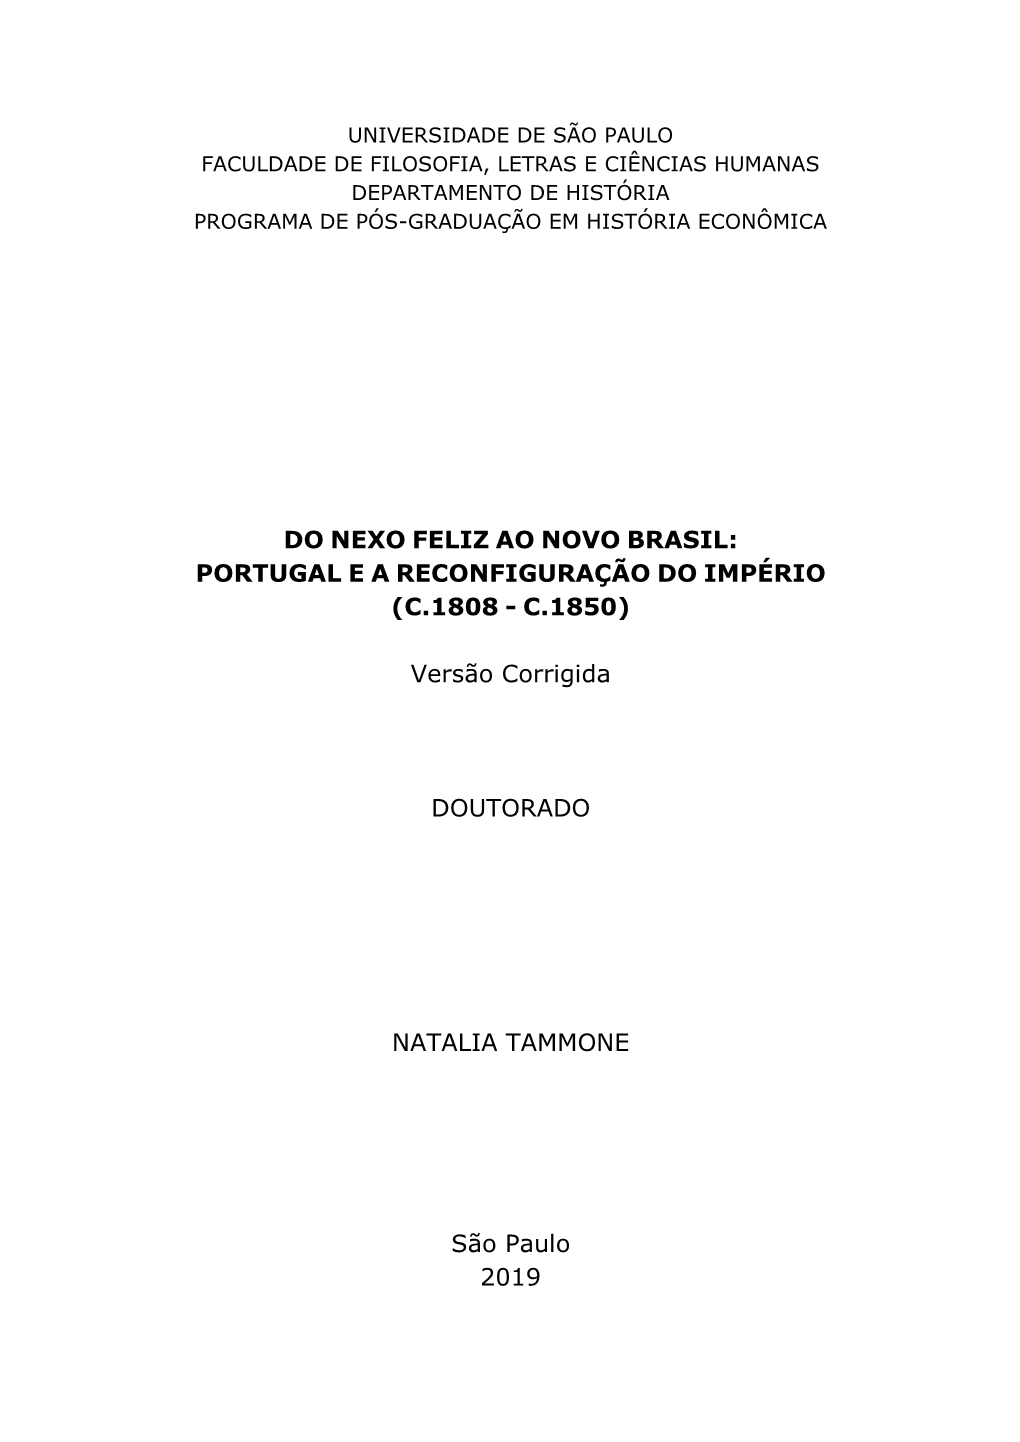 Portugal E a Reconfiguração Do Império (C.1808 - C.1850)